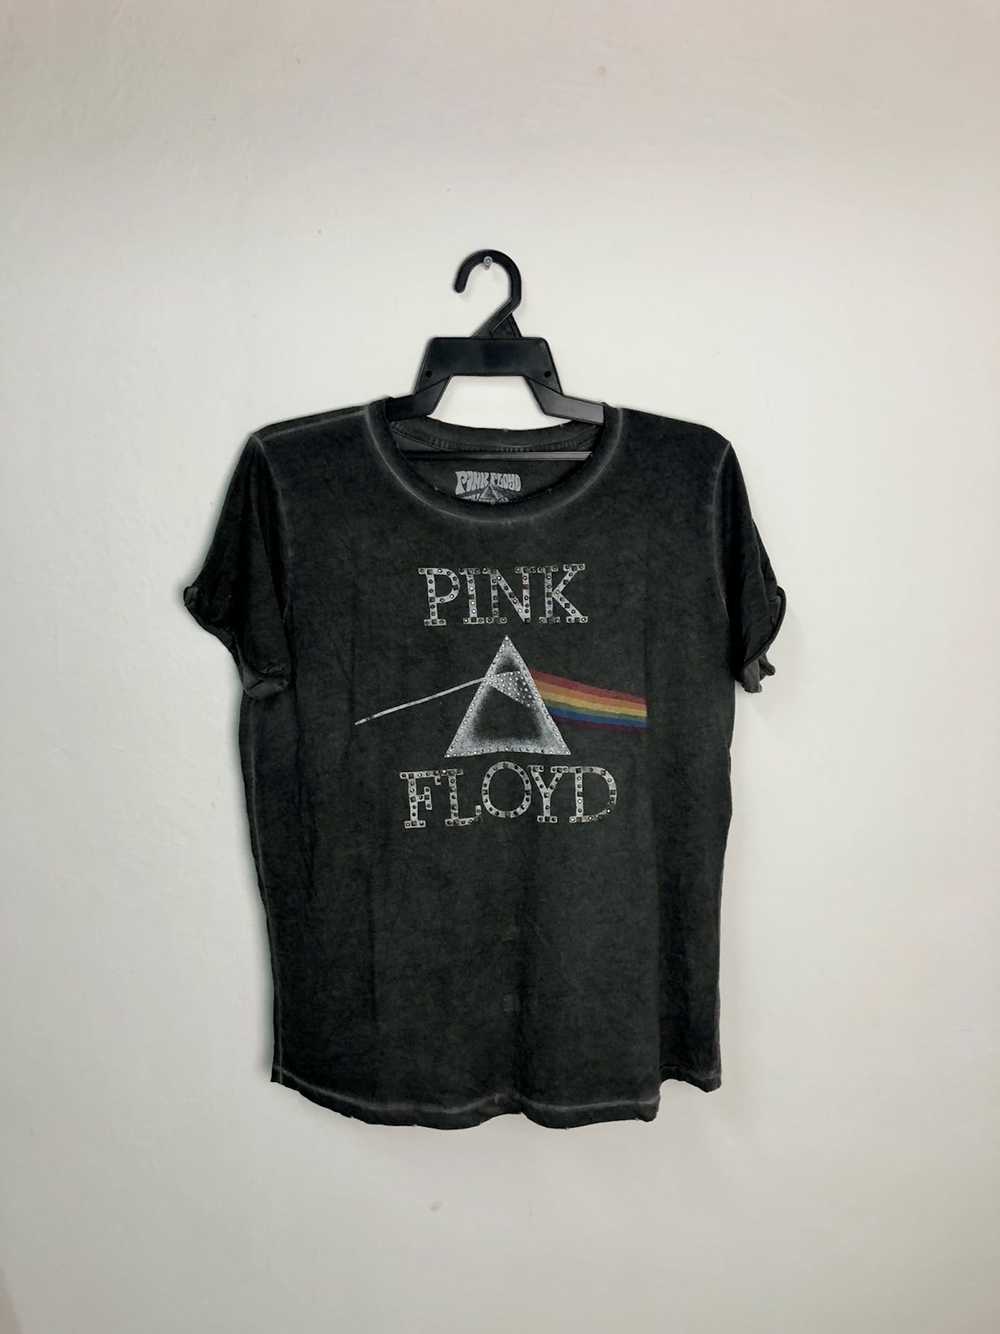 Band Tees × Pink Floyd Pink floyd - image 1